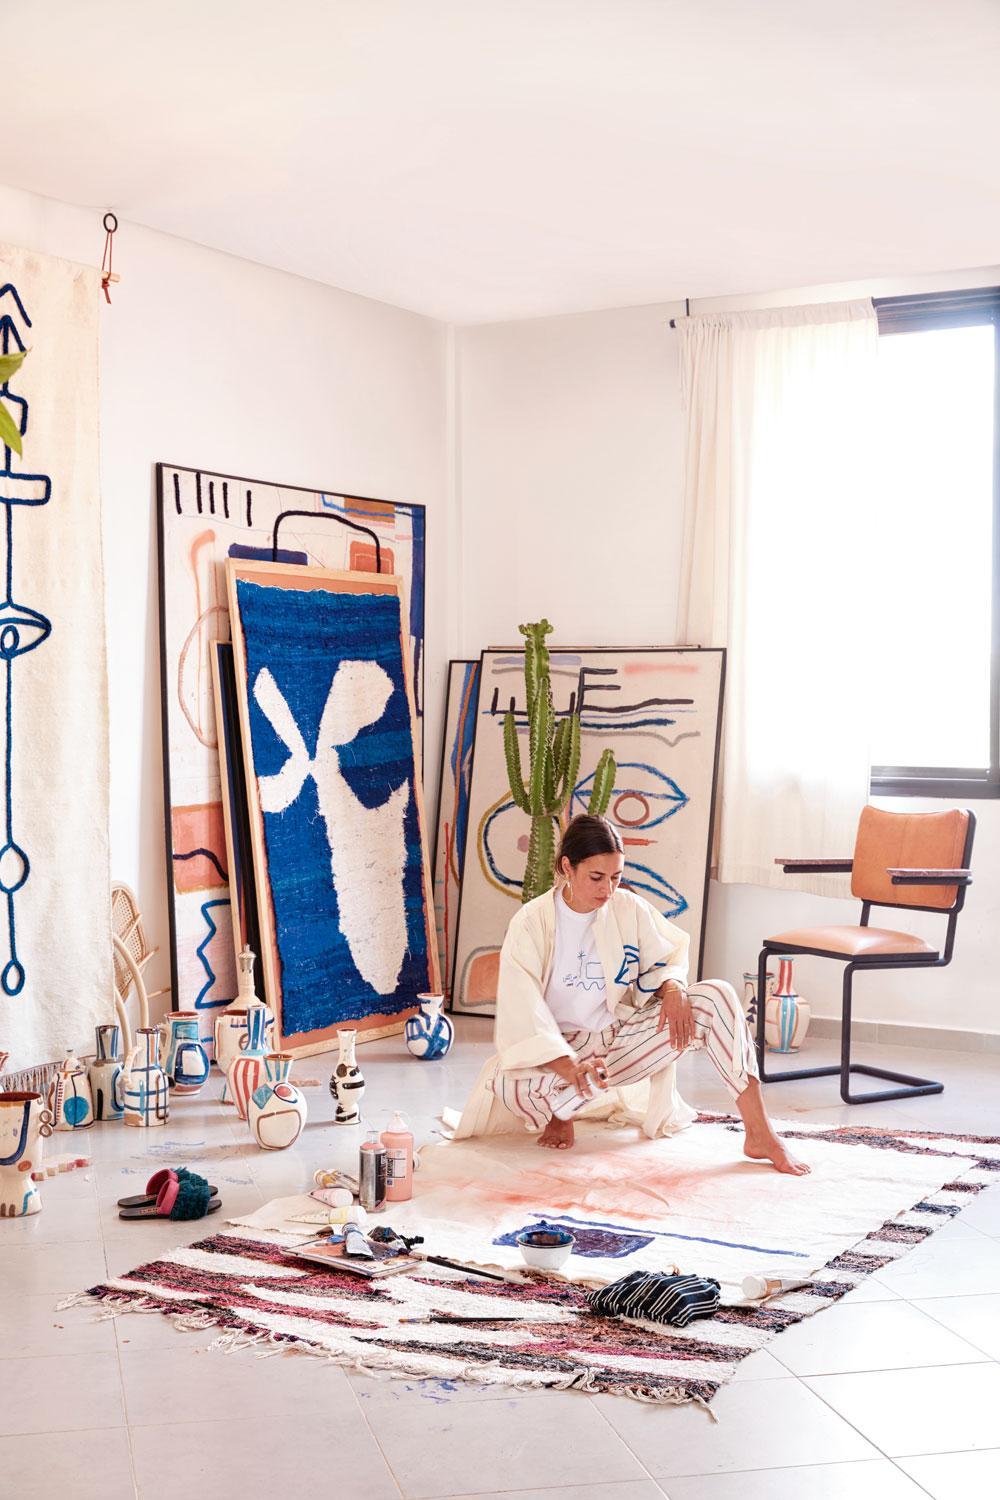 Haar studio in Sidi Ghanem: 'De productie is kleinschalig. Unieke, persoonlijke, handgemaakte objecten maken. Daar draait het om, de rest interesseert me niet.'